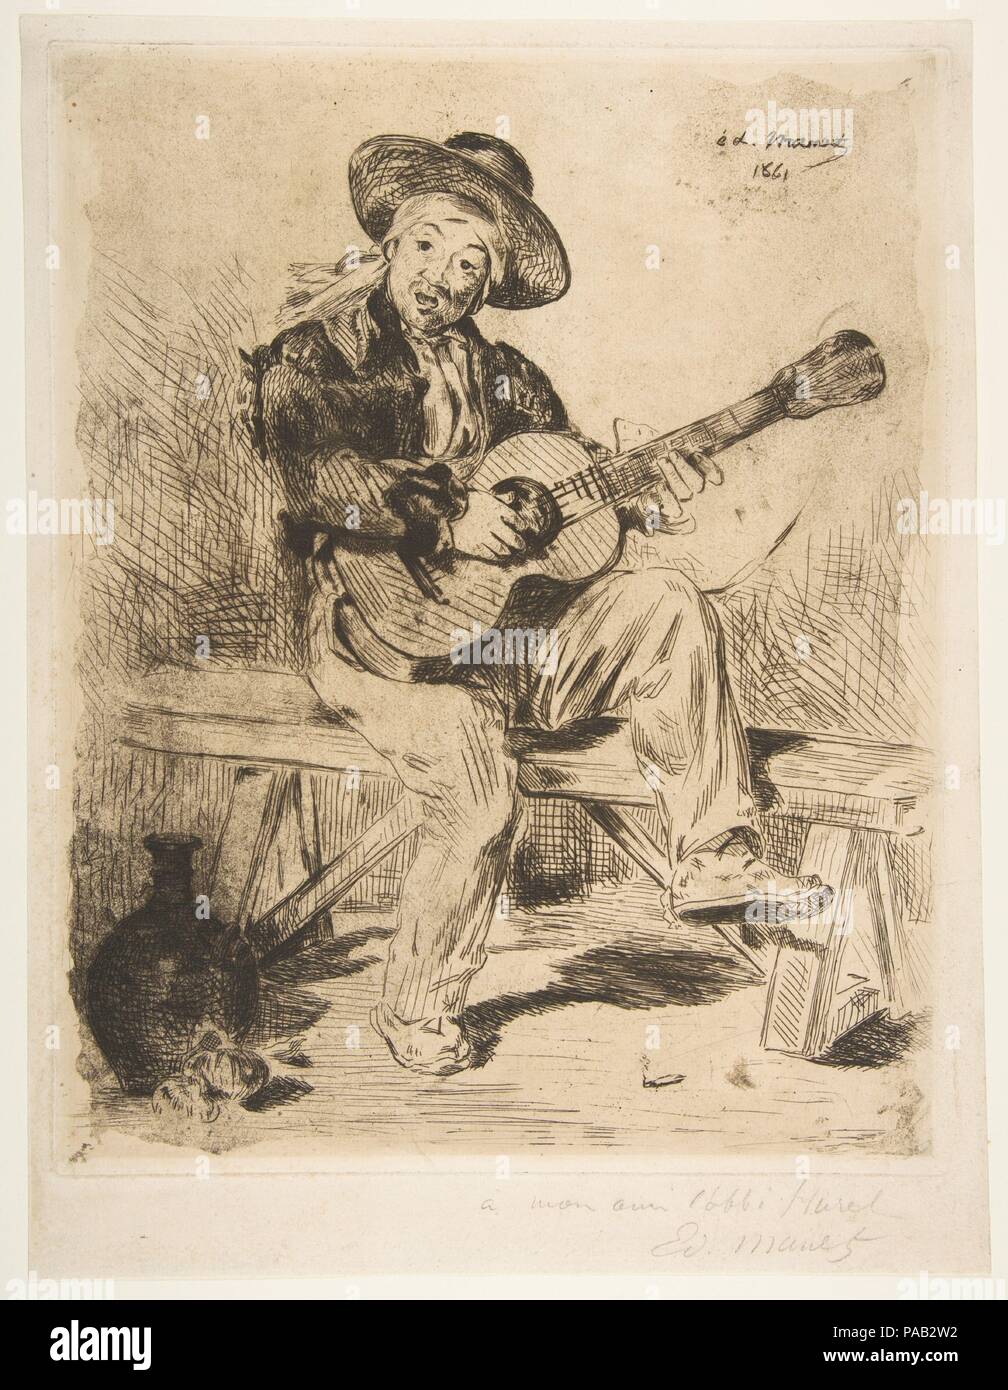 Il cantante spagnolo (Le Guitarrero). Artista: Édouard Manet (francese, Parigi Parigi 1832-1883). Dimensioni: piastra: 12 1/8 x 9 5/8 in. (30,8 x 24,4 cm) foglio: 13 7/16 x 10 5/16 in. (34,2 x 26,2 cm). Data: 1861-62. Museo: Metropolitan Museum of Art di New York, Stati Uniti d'America. Foto Stock